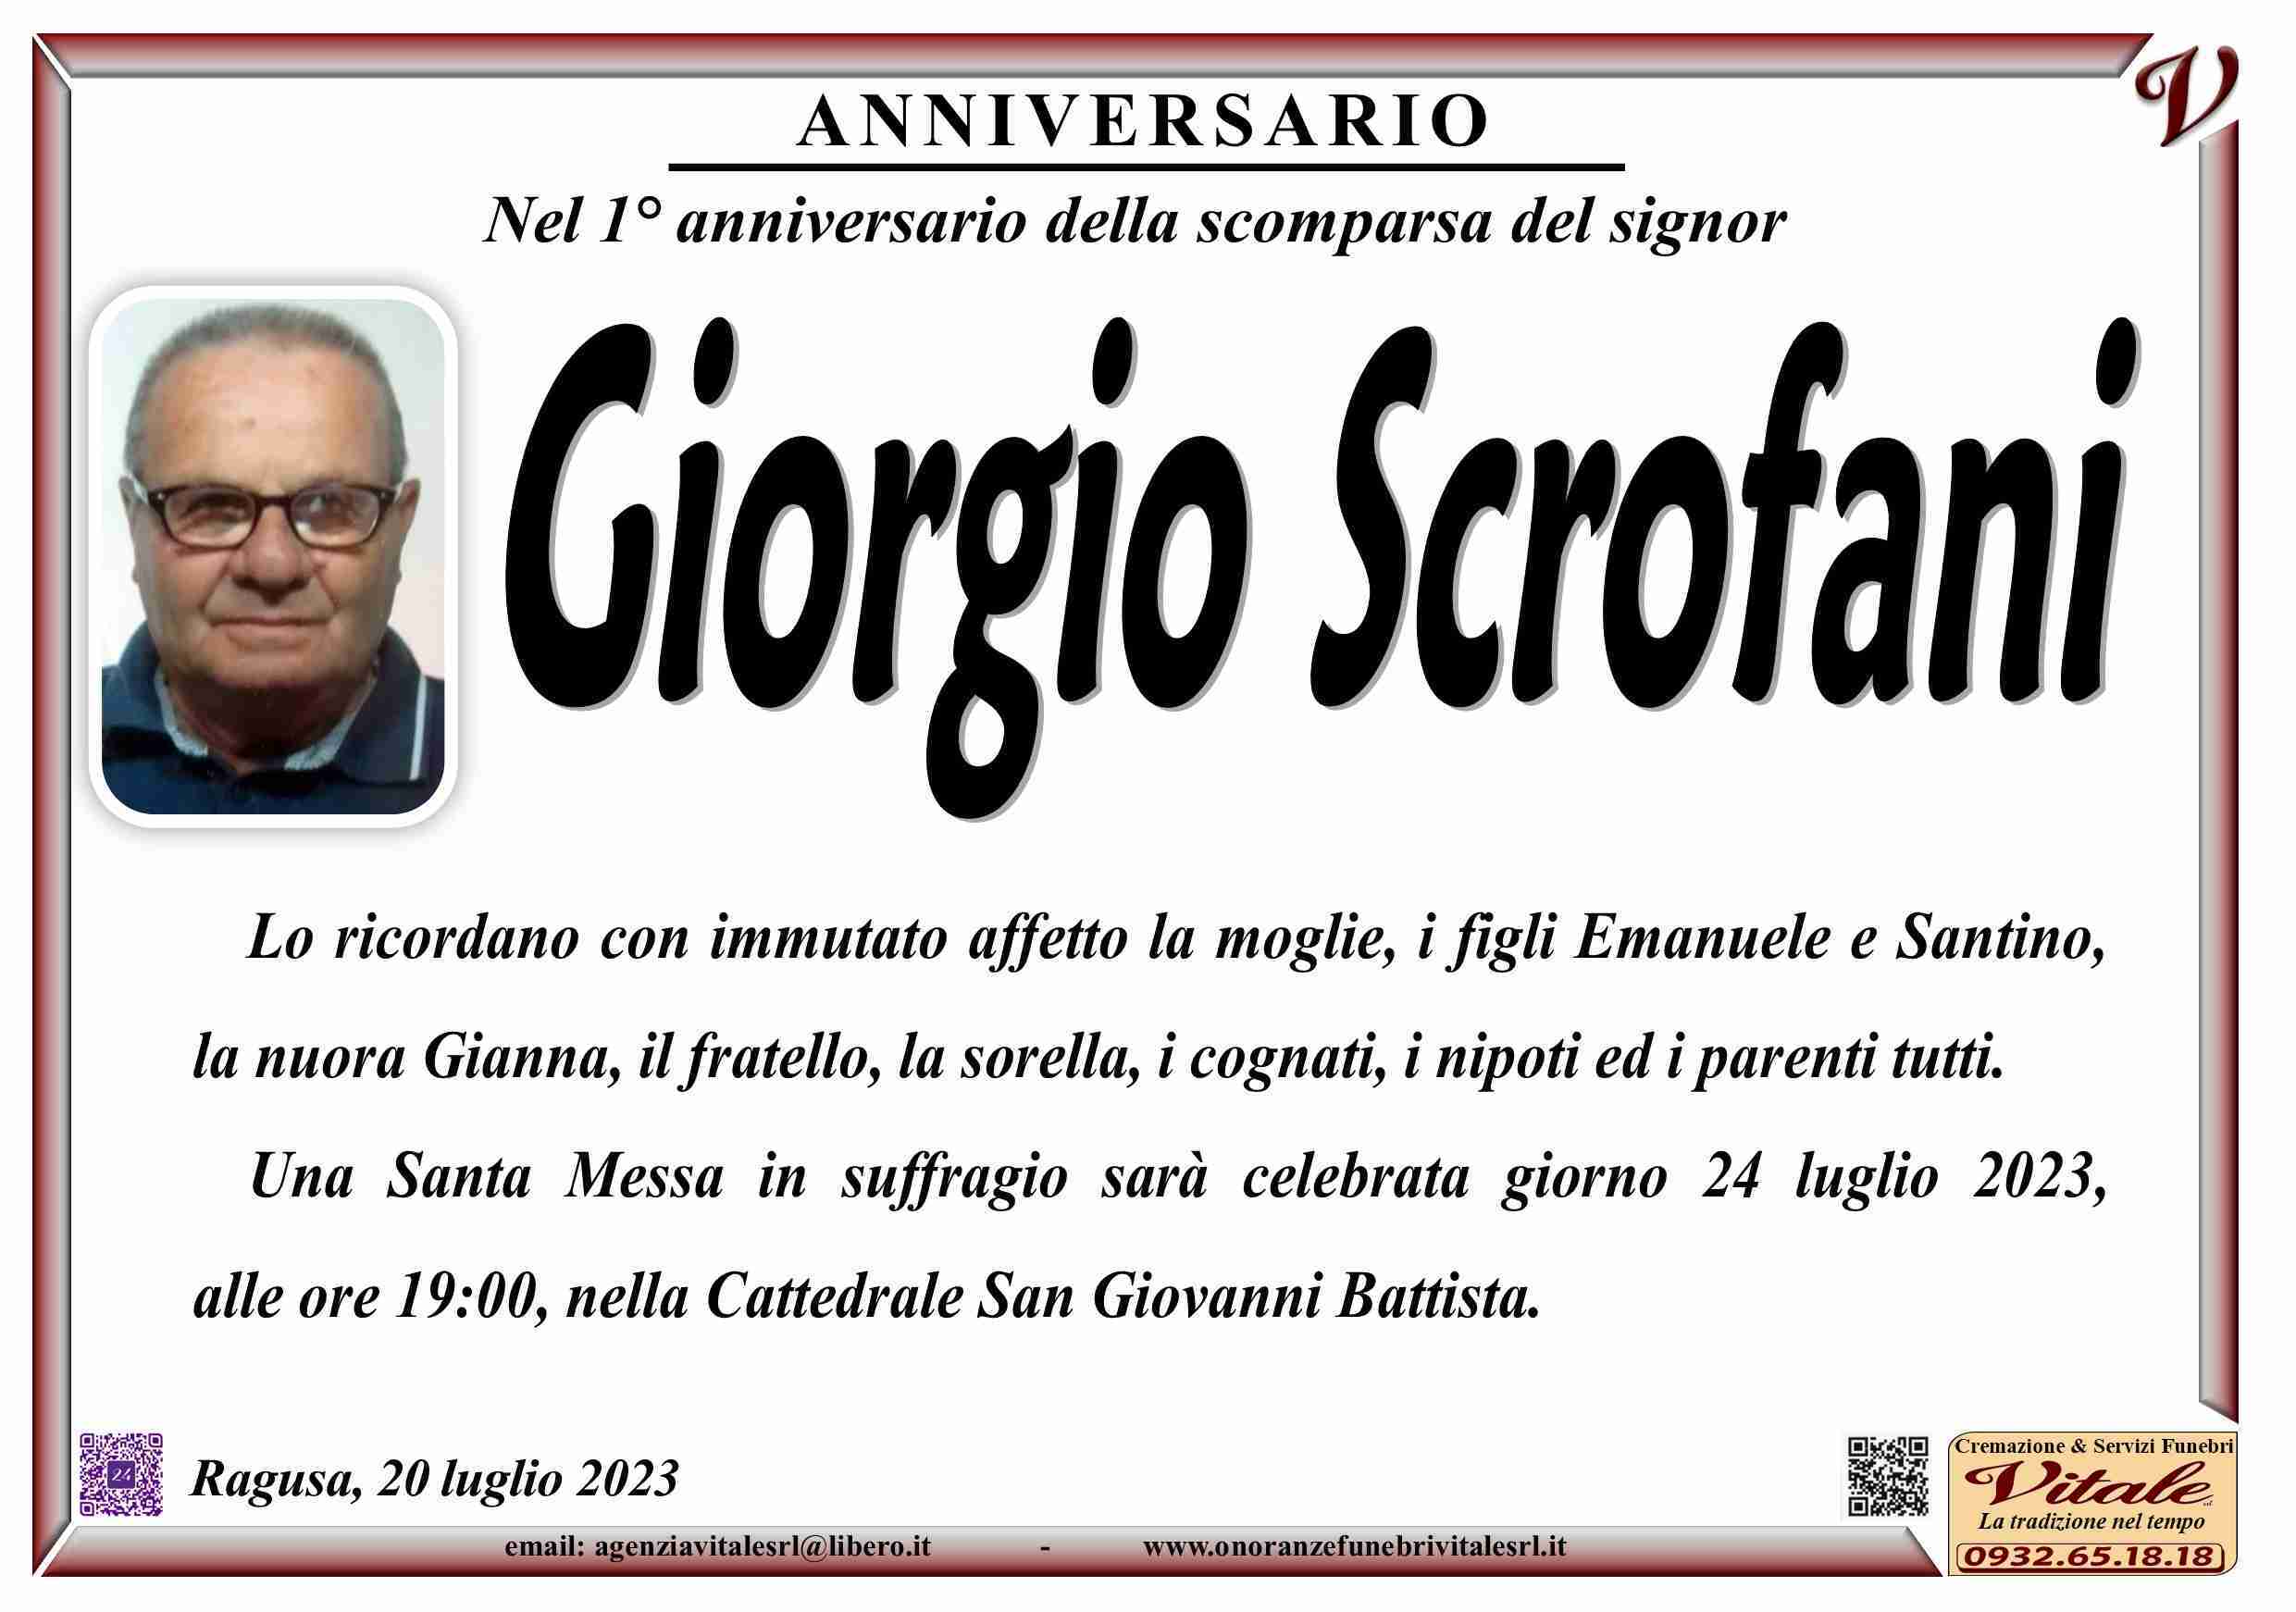 Giorgio Scrofani